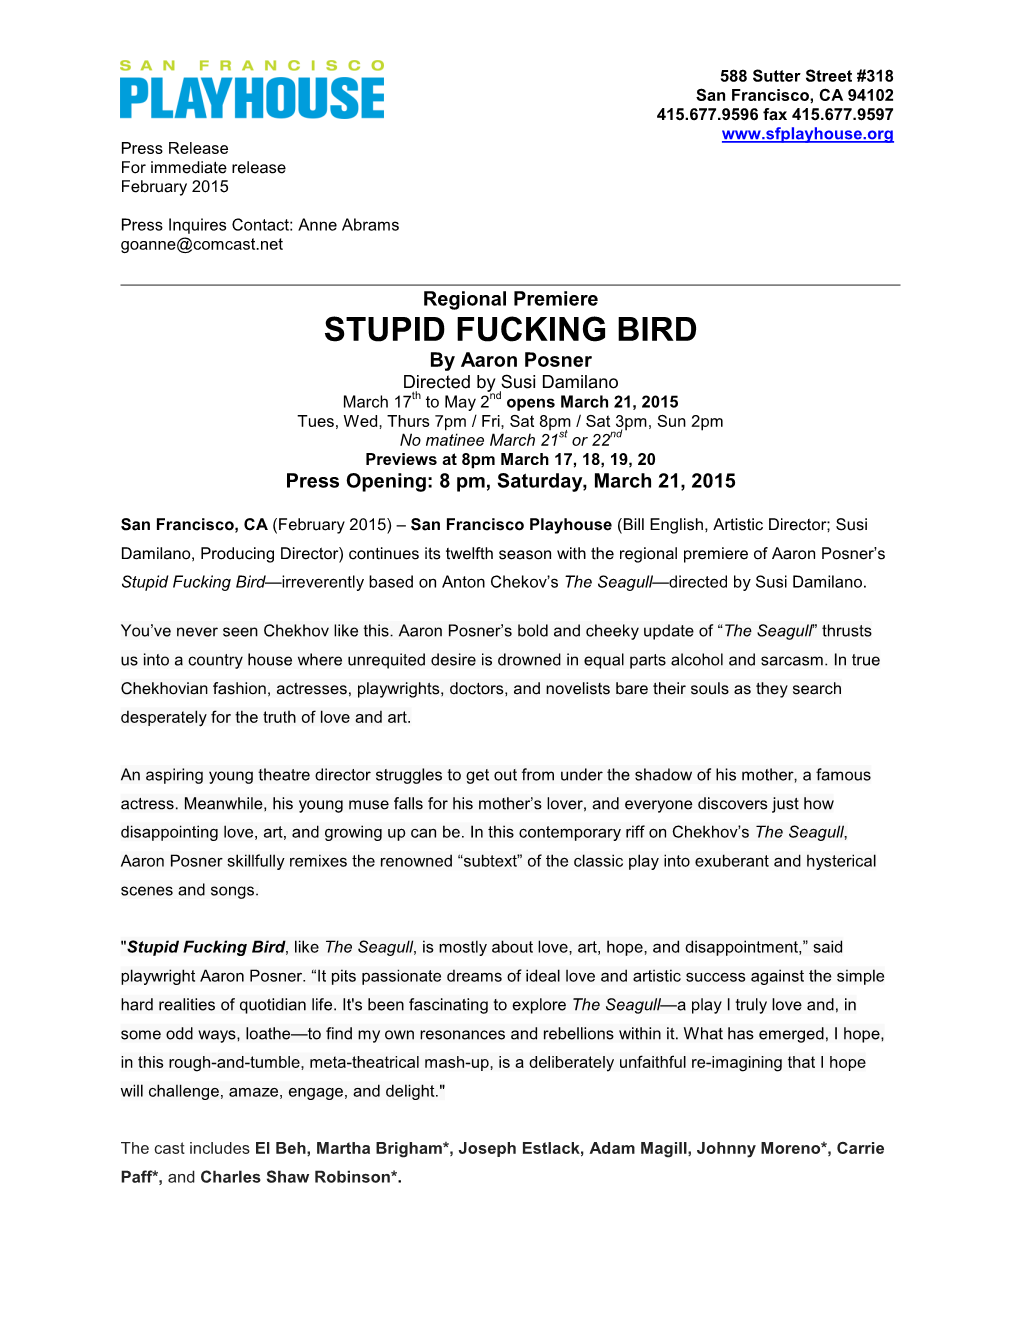 Stupid Fucking Bird